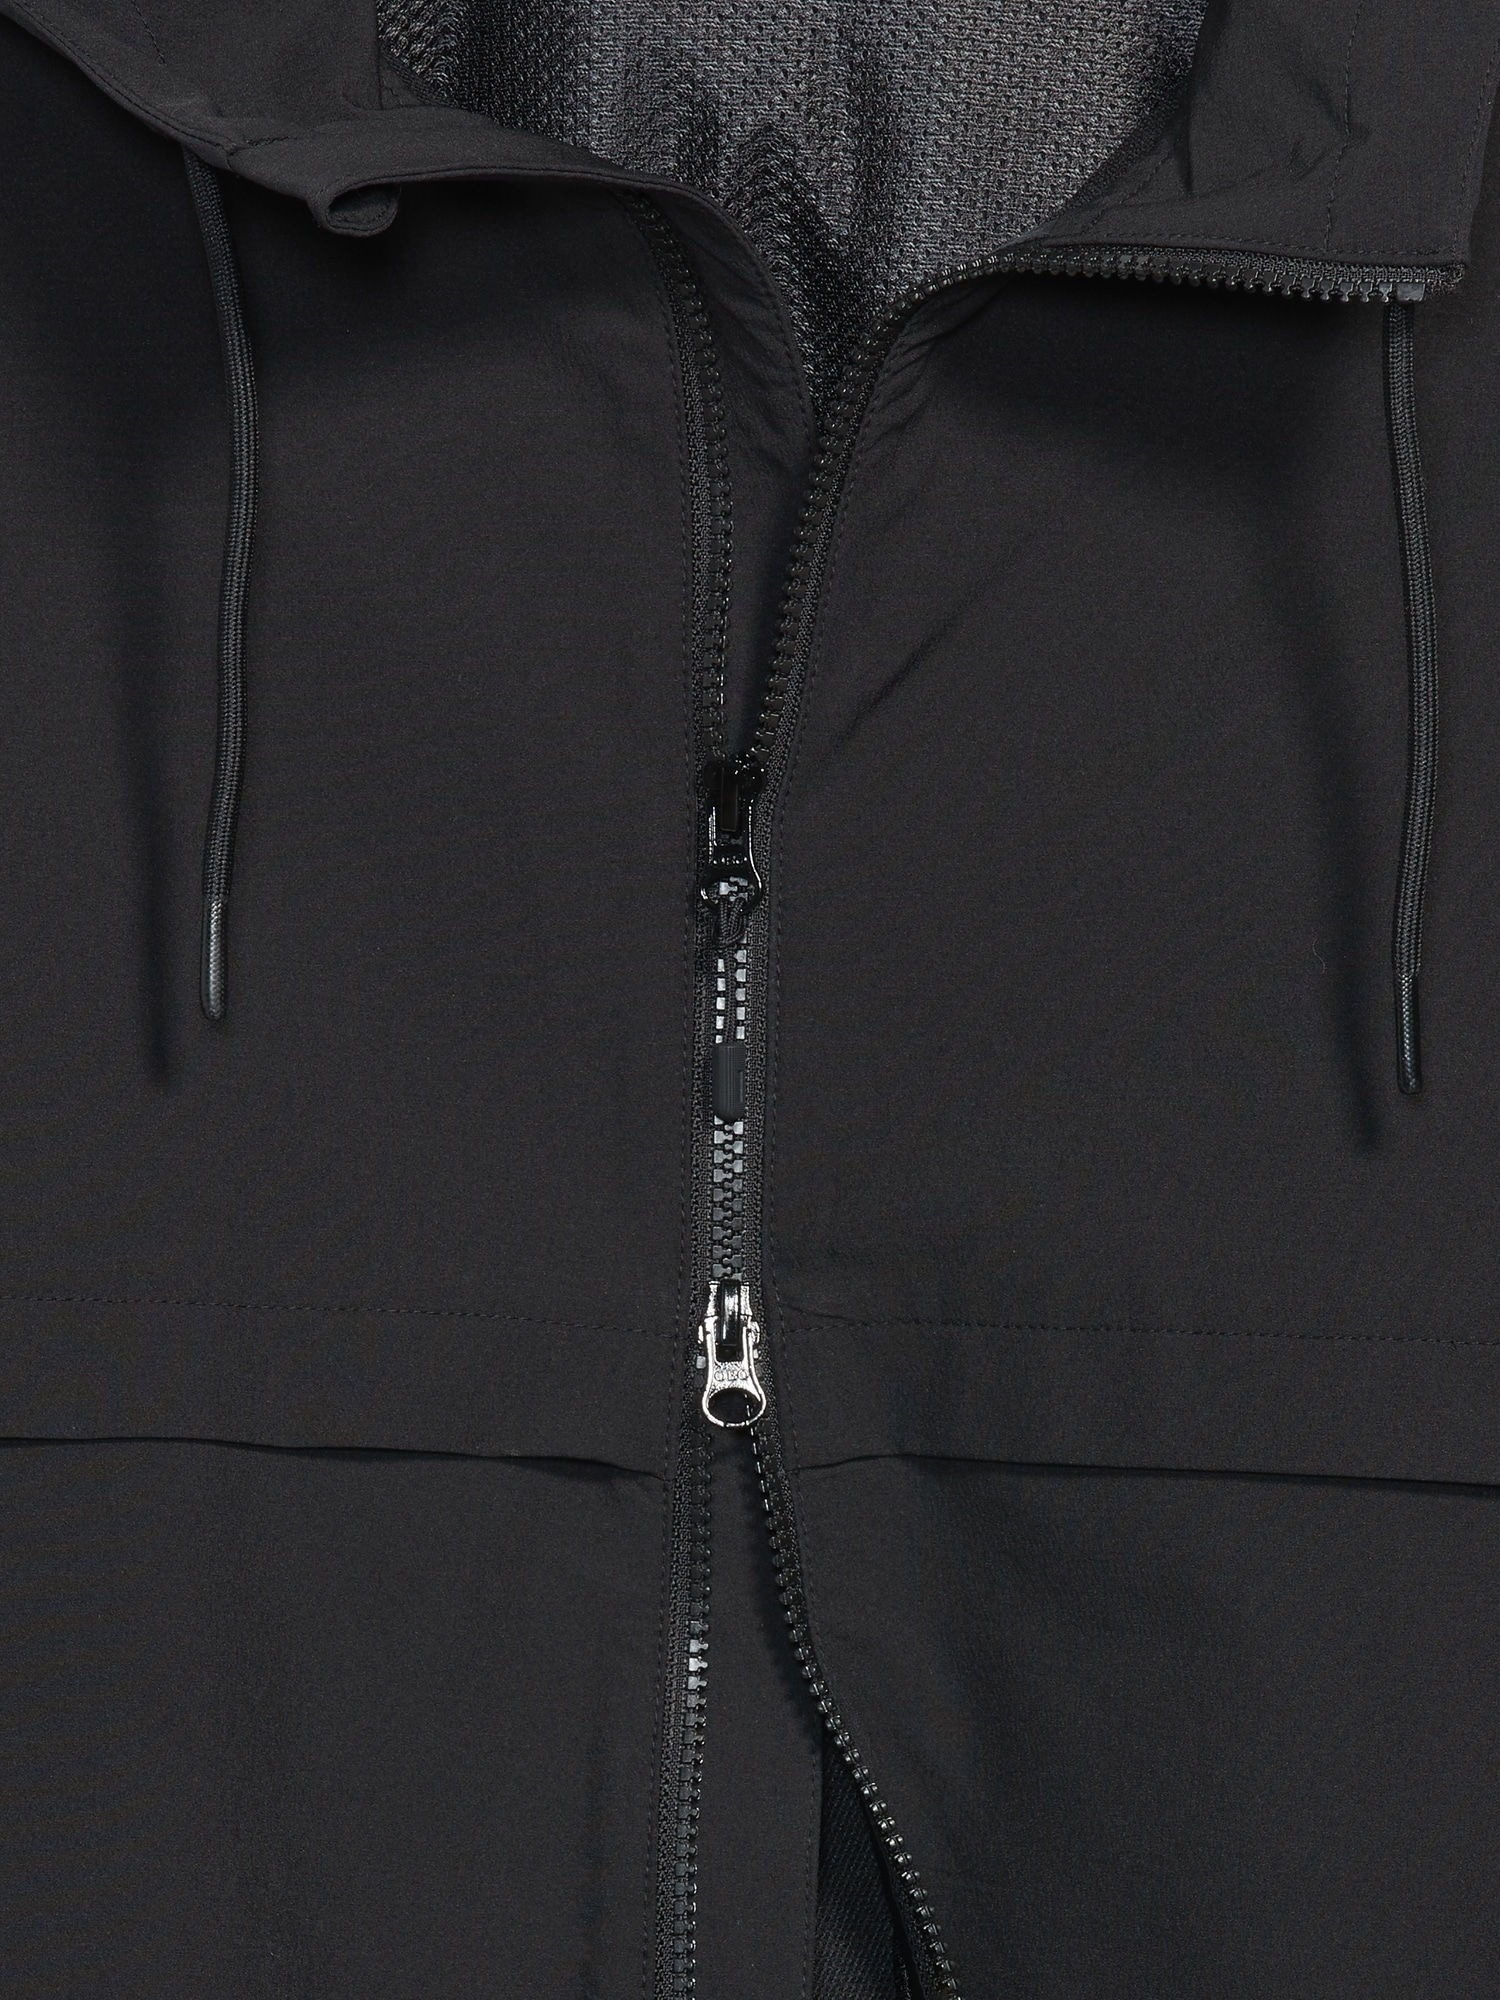 Old Navy Men's Stretchtech Water-Repellent Hooded Zip Jacket - - Size M